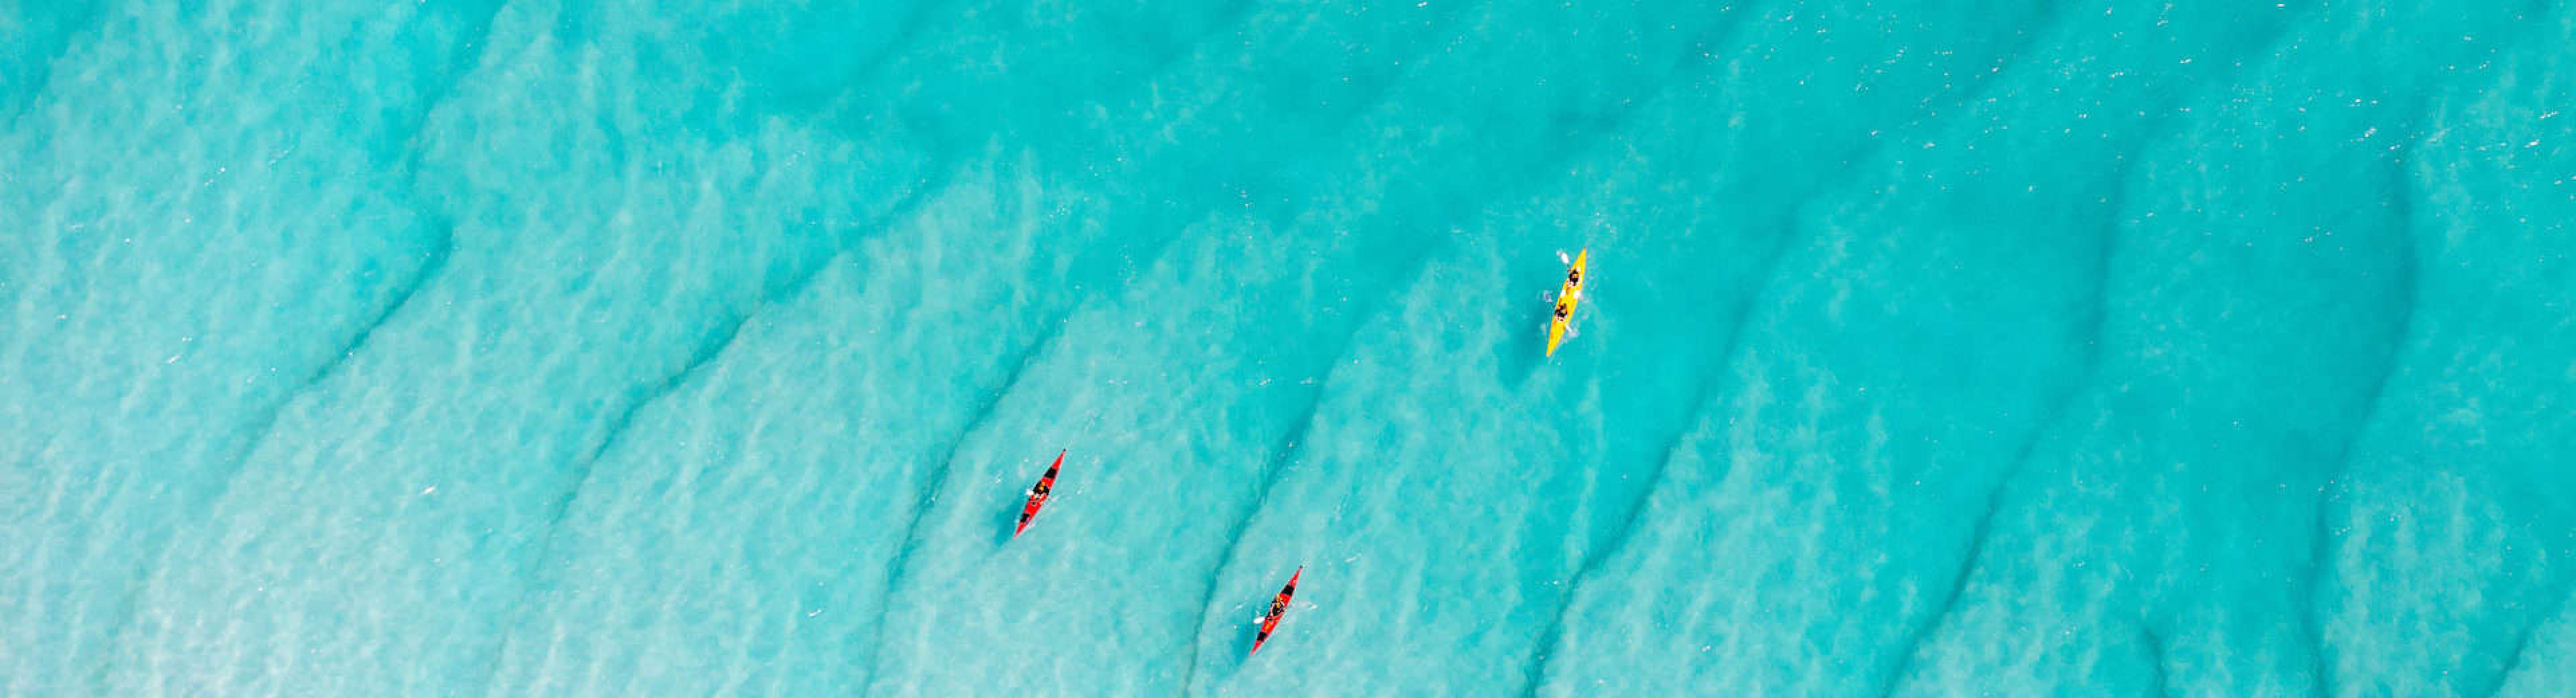 aerial view of 3 kayaks in clear blue ocean